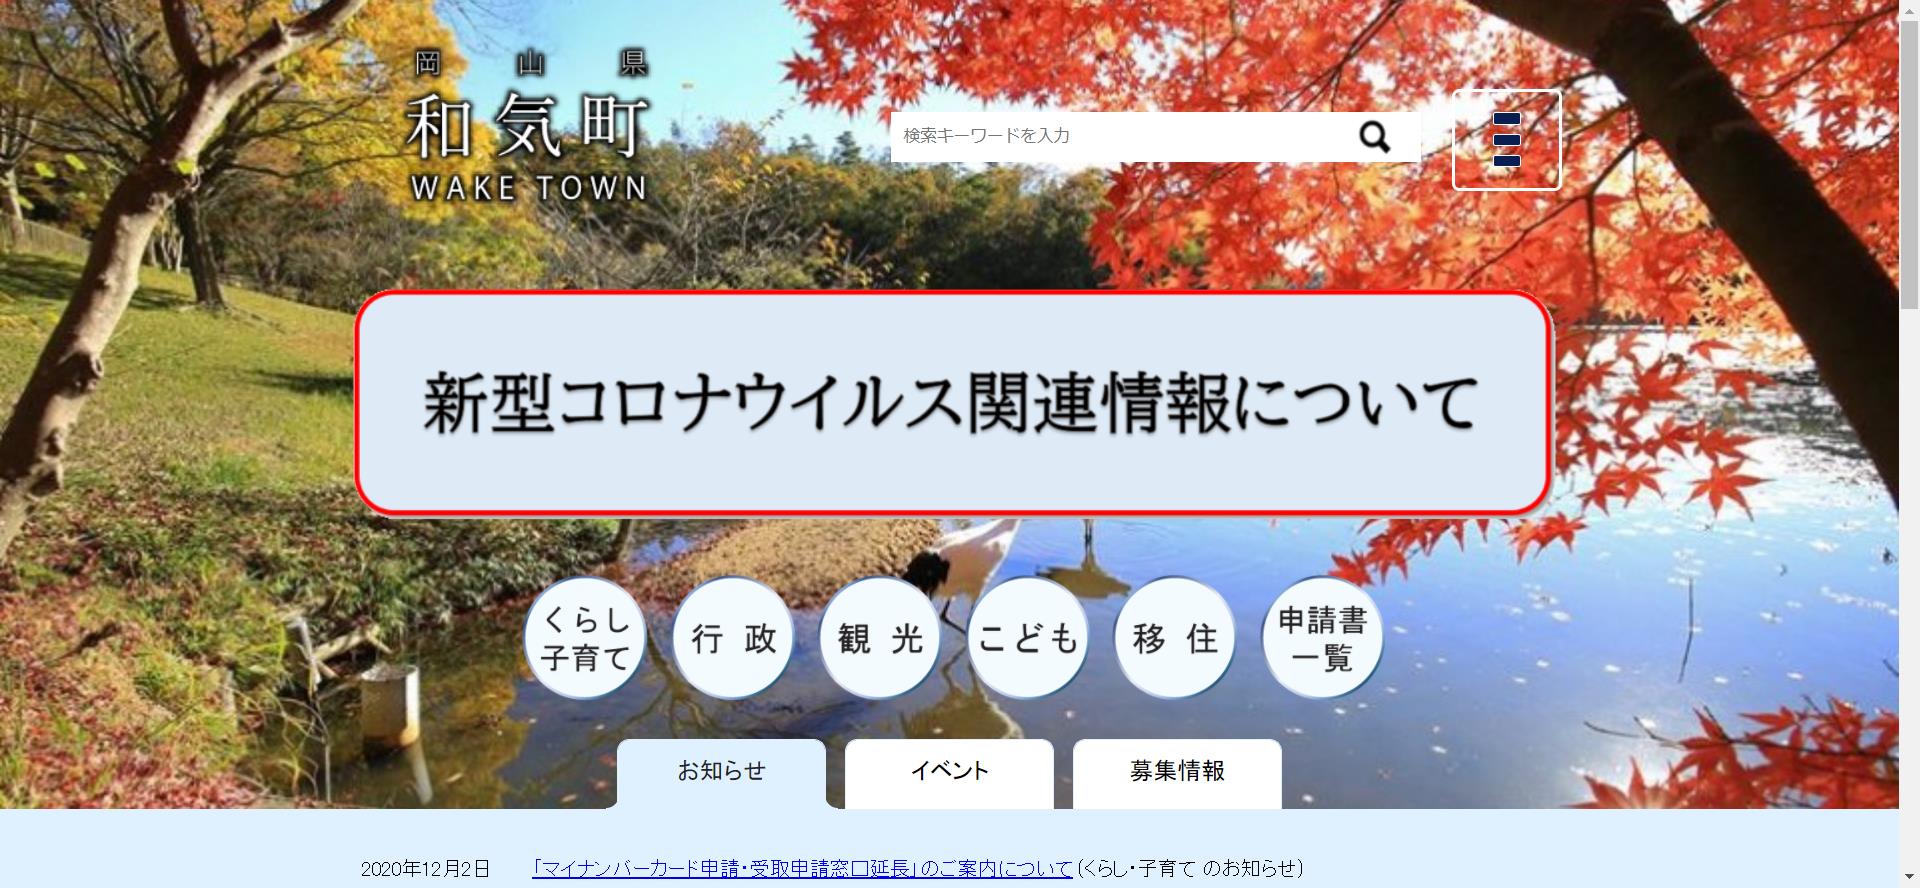 和気町ホームページ